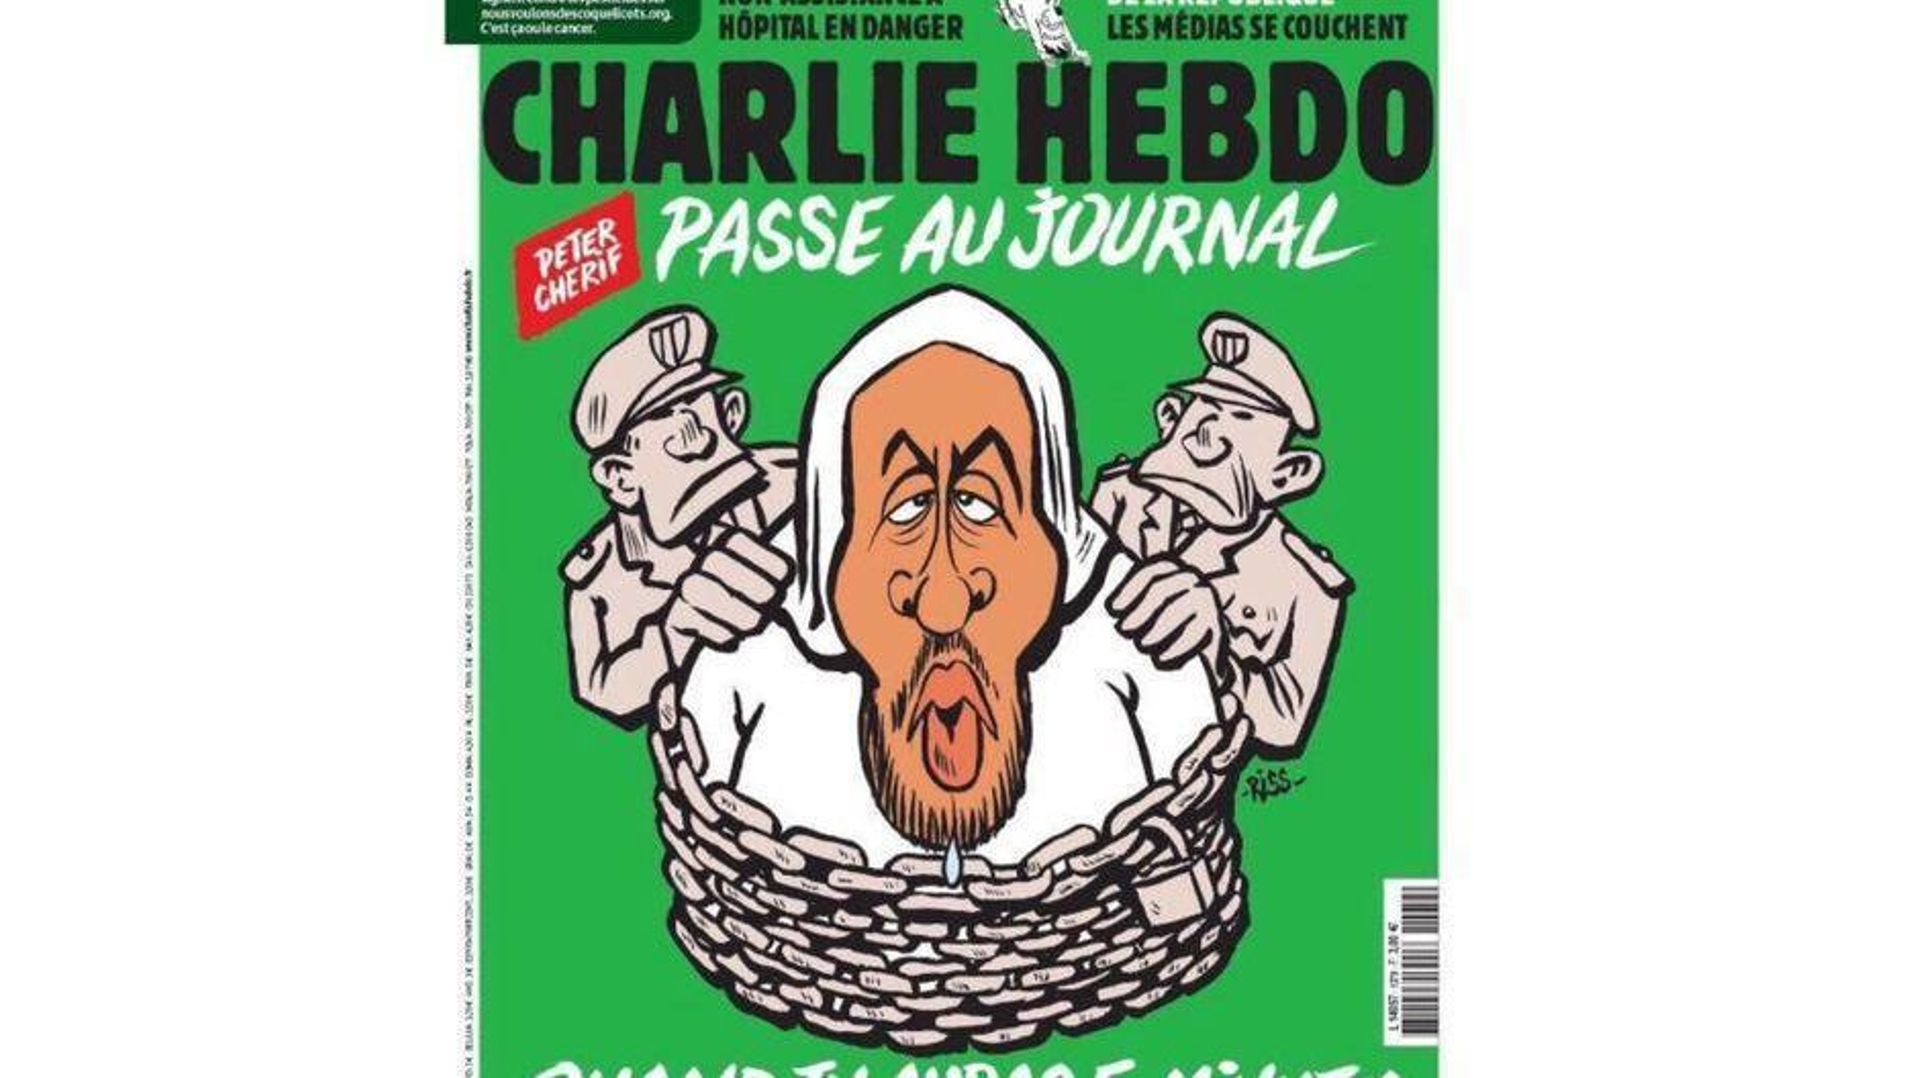 Charlie Hebdo: 4 ans après l'attentat, le journal dit son amertume